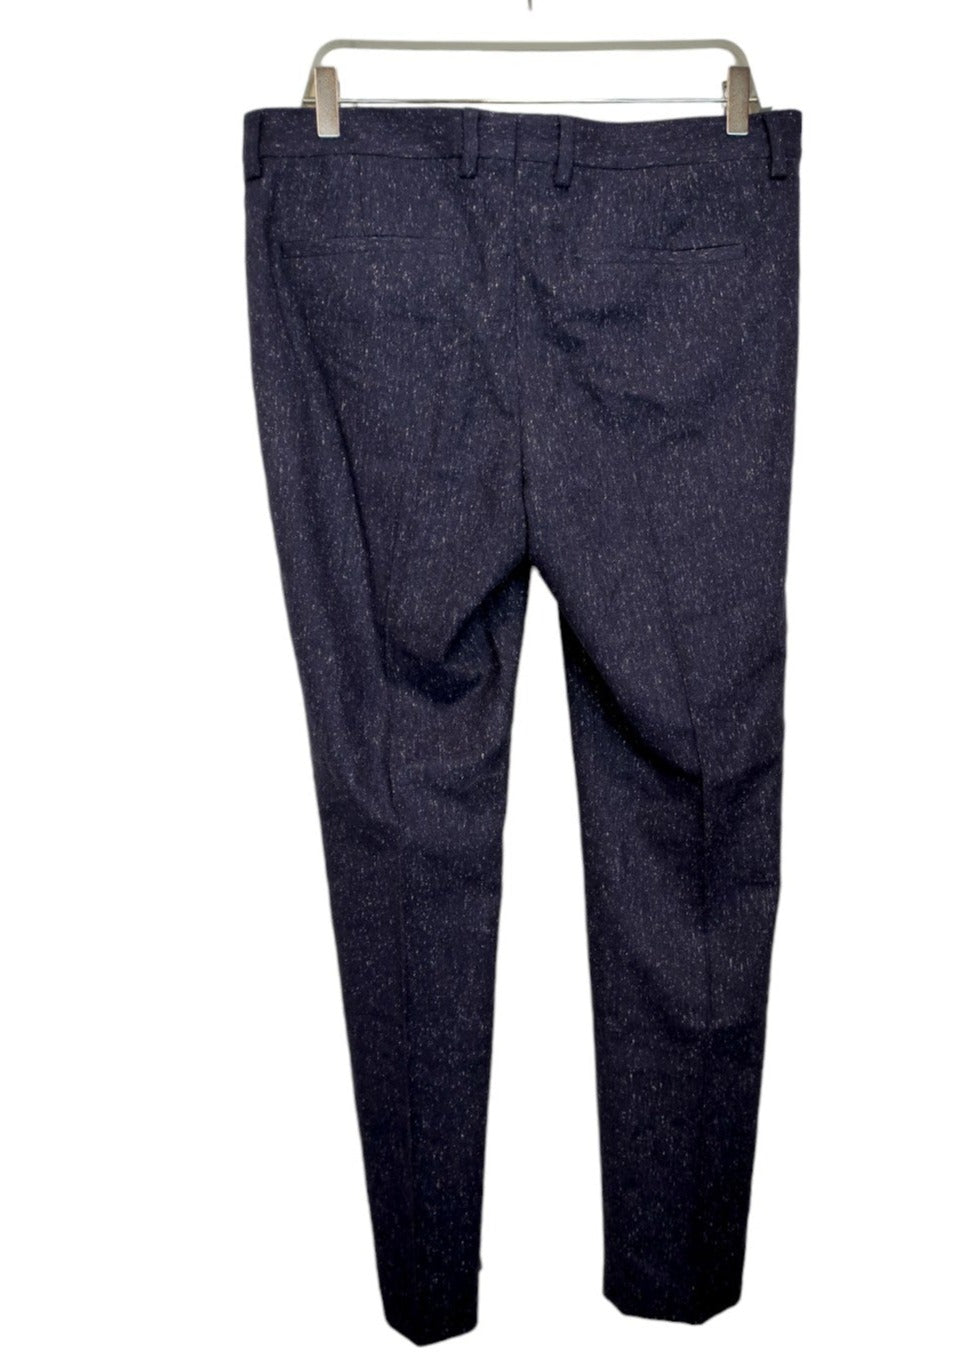 Μάλλινο, Ανδρικό Παντελόνι σε Μπλε Σκούρο Χρώμα (Νο 40)